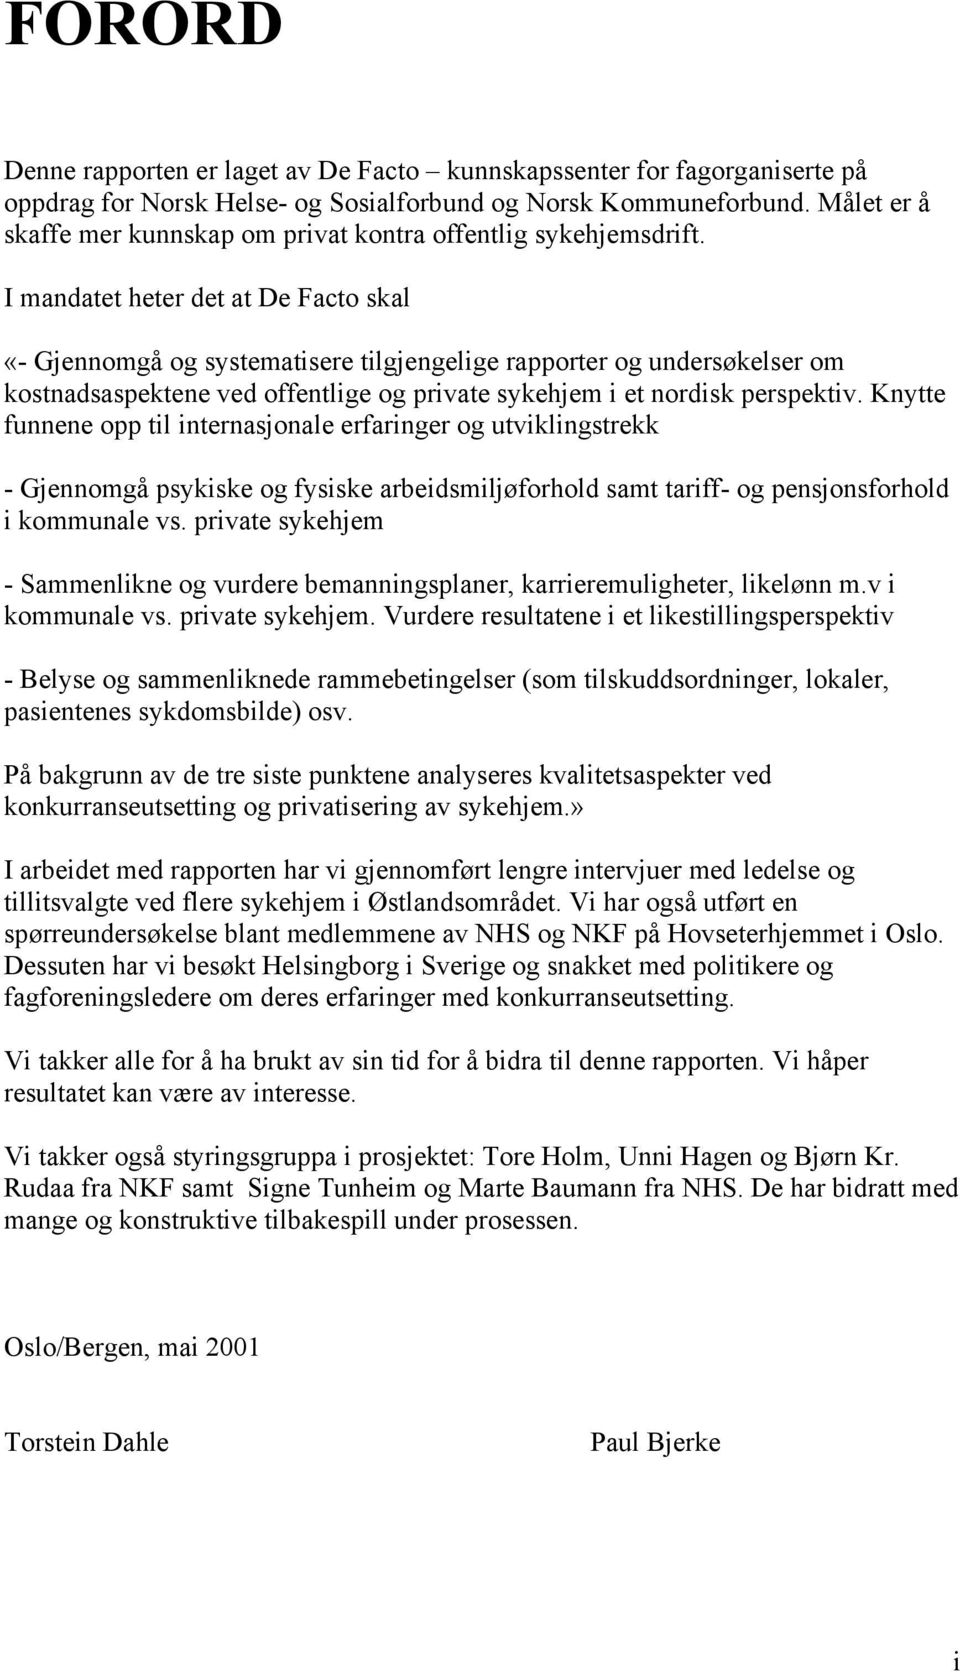 I mandatet heter det at De Facto skal «- Gjennomgå og systematisere tilgjengelige rapporter og undersøkelser om kostnadsaspektene ved offentlige og private sykehjem i et nordisk perspektiv.